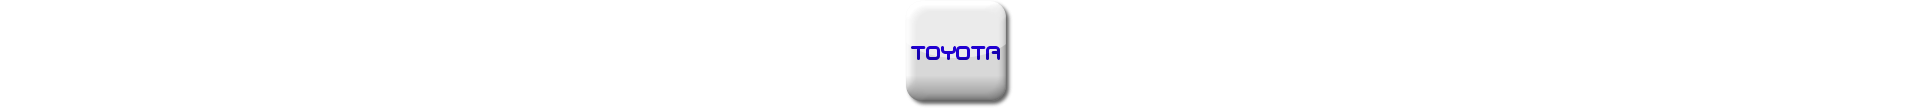 Boitier additionnel Toyota Diesel Evolussem